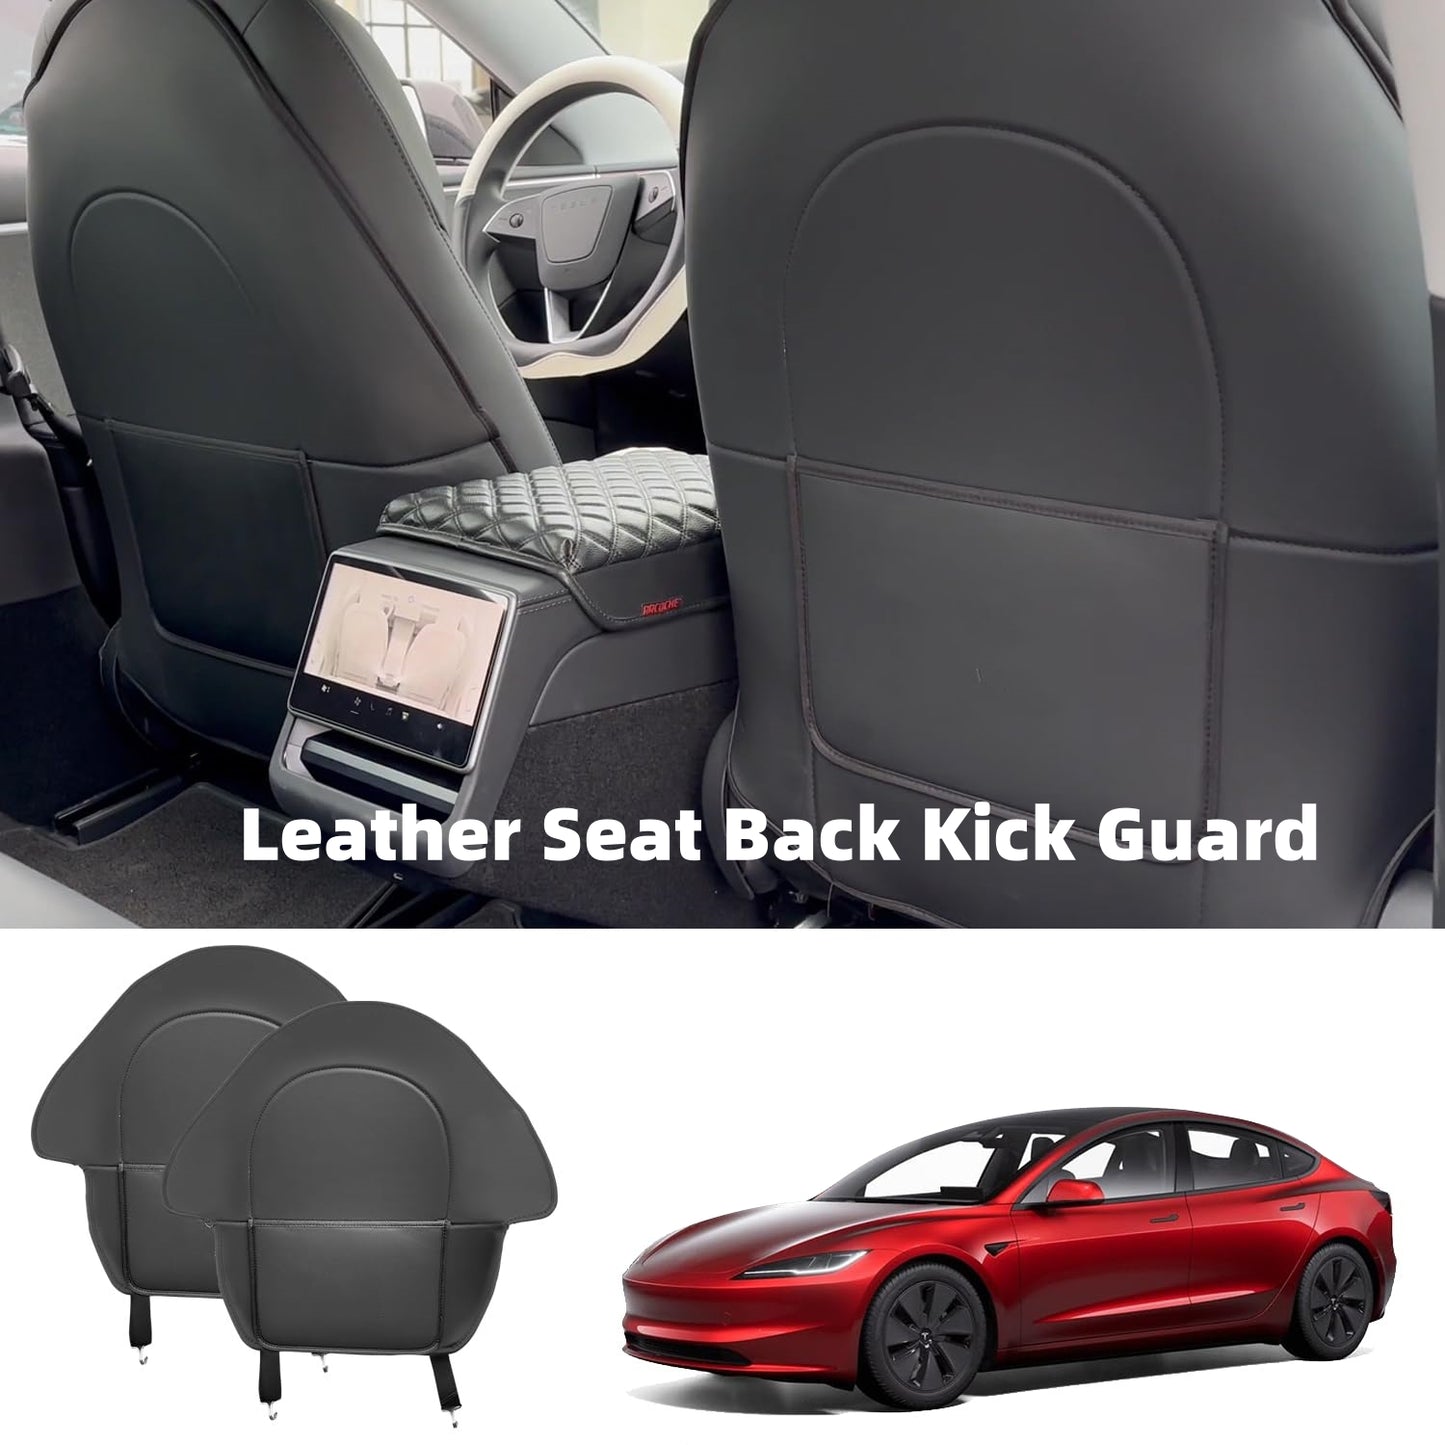 Leather Seat Back Kick Guard for Tesla Model 3 highland/3/Y - Set of 2